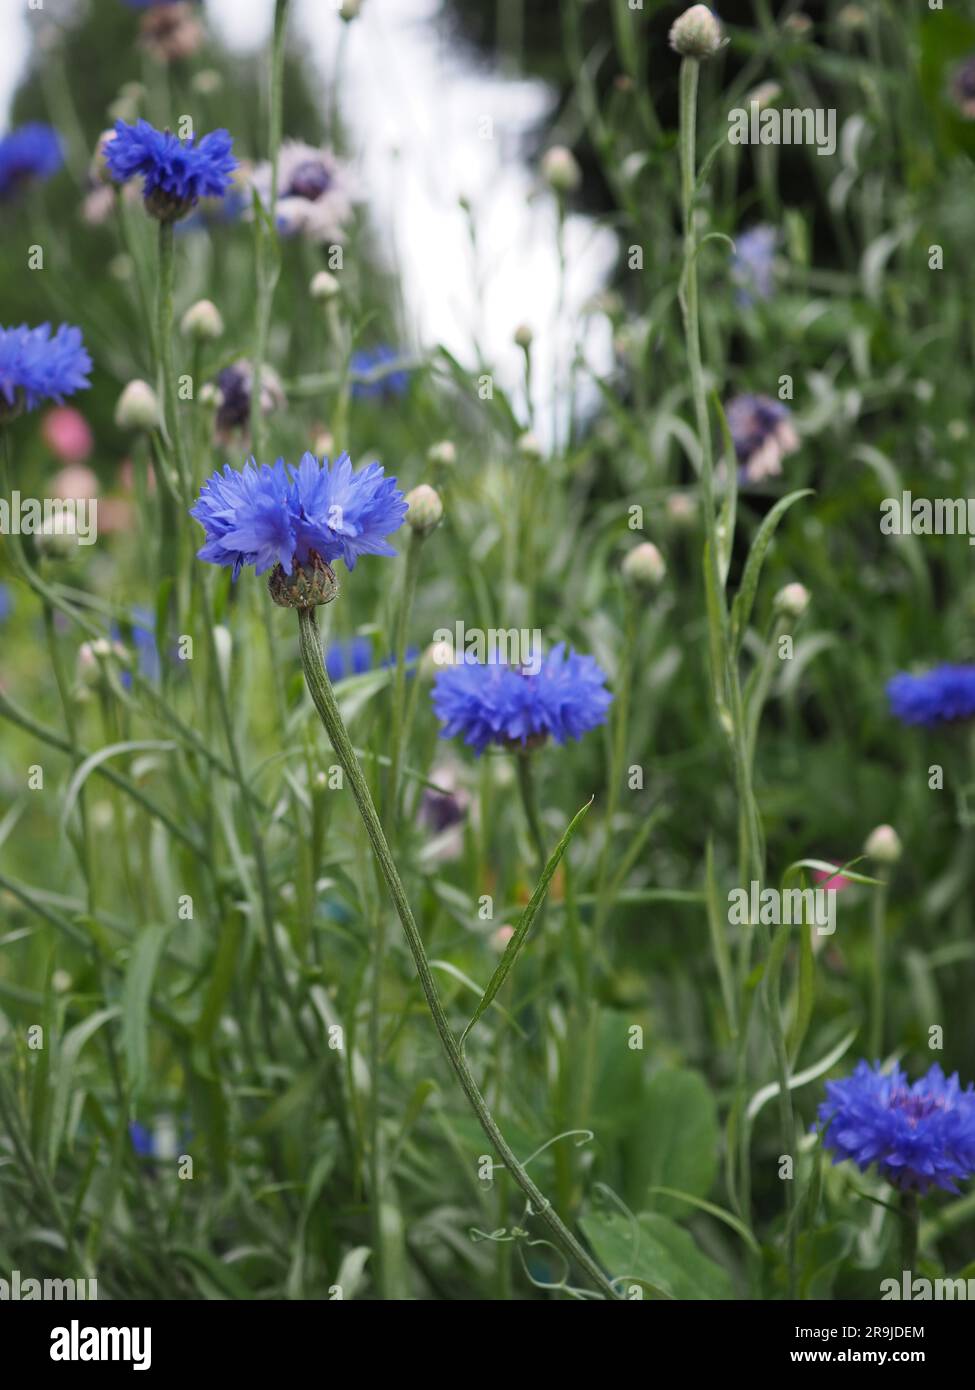 Centaurea cyanus 'Blue Ball' (bleuet) plantes en fleur du point de vue des yeux dans une prairie ou une parcelle de fleurs coupées en été en Grande-Bretagne Banque D'Images